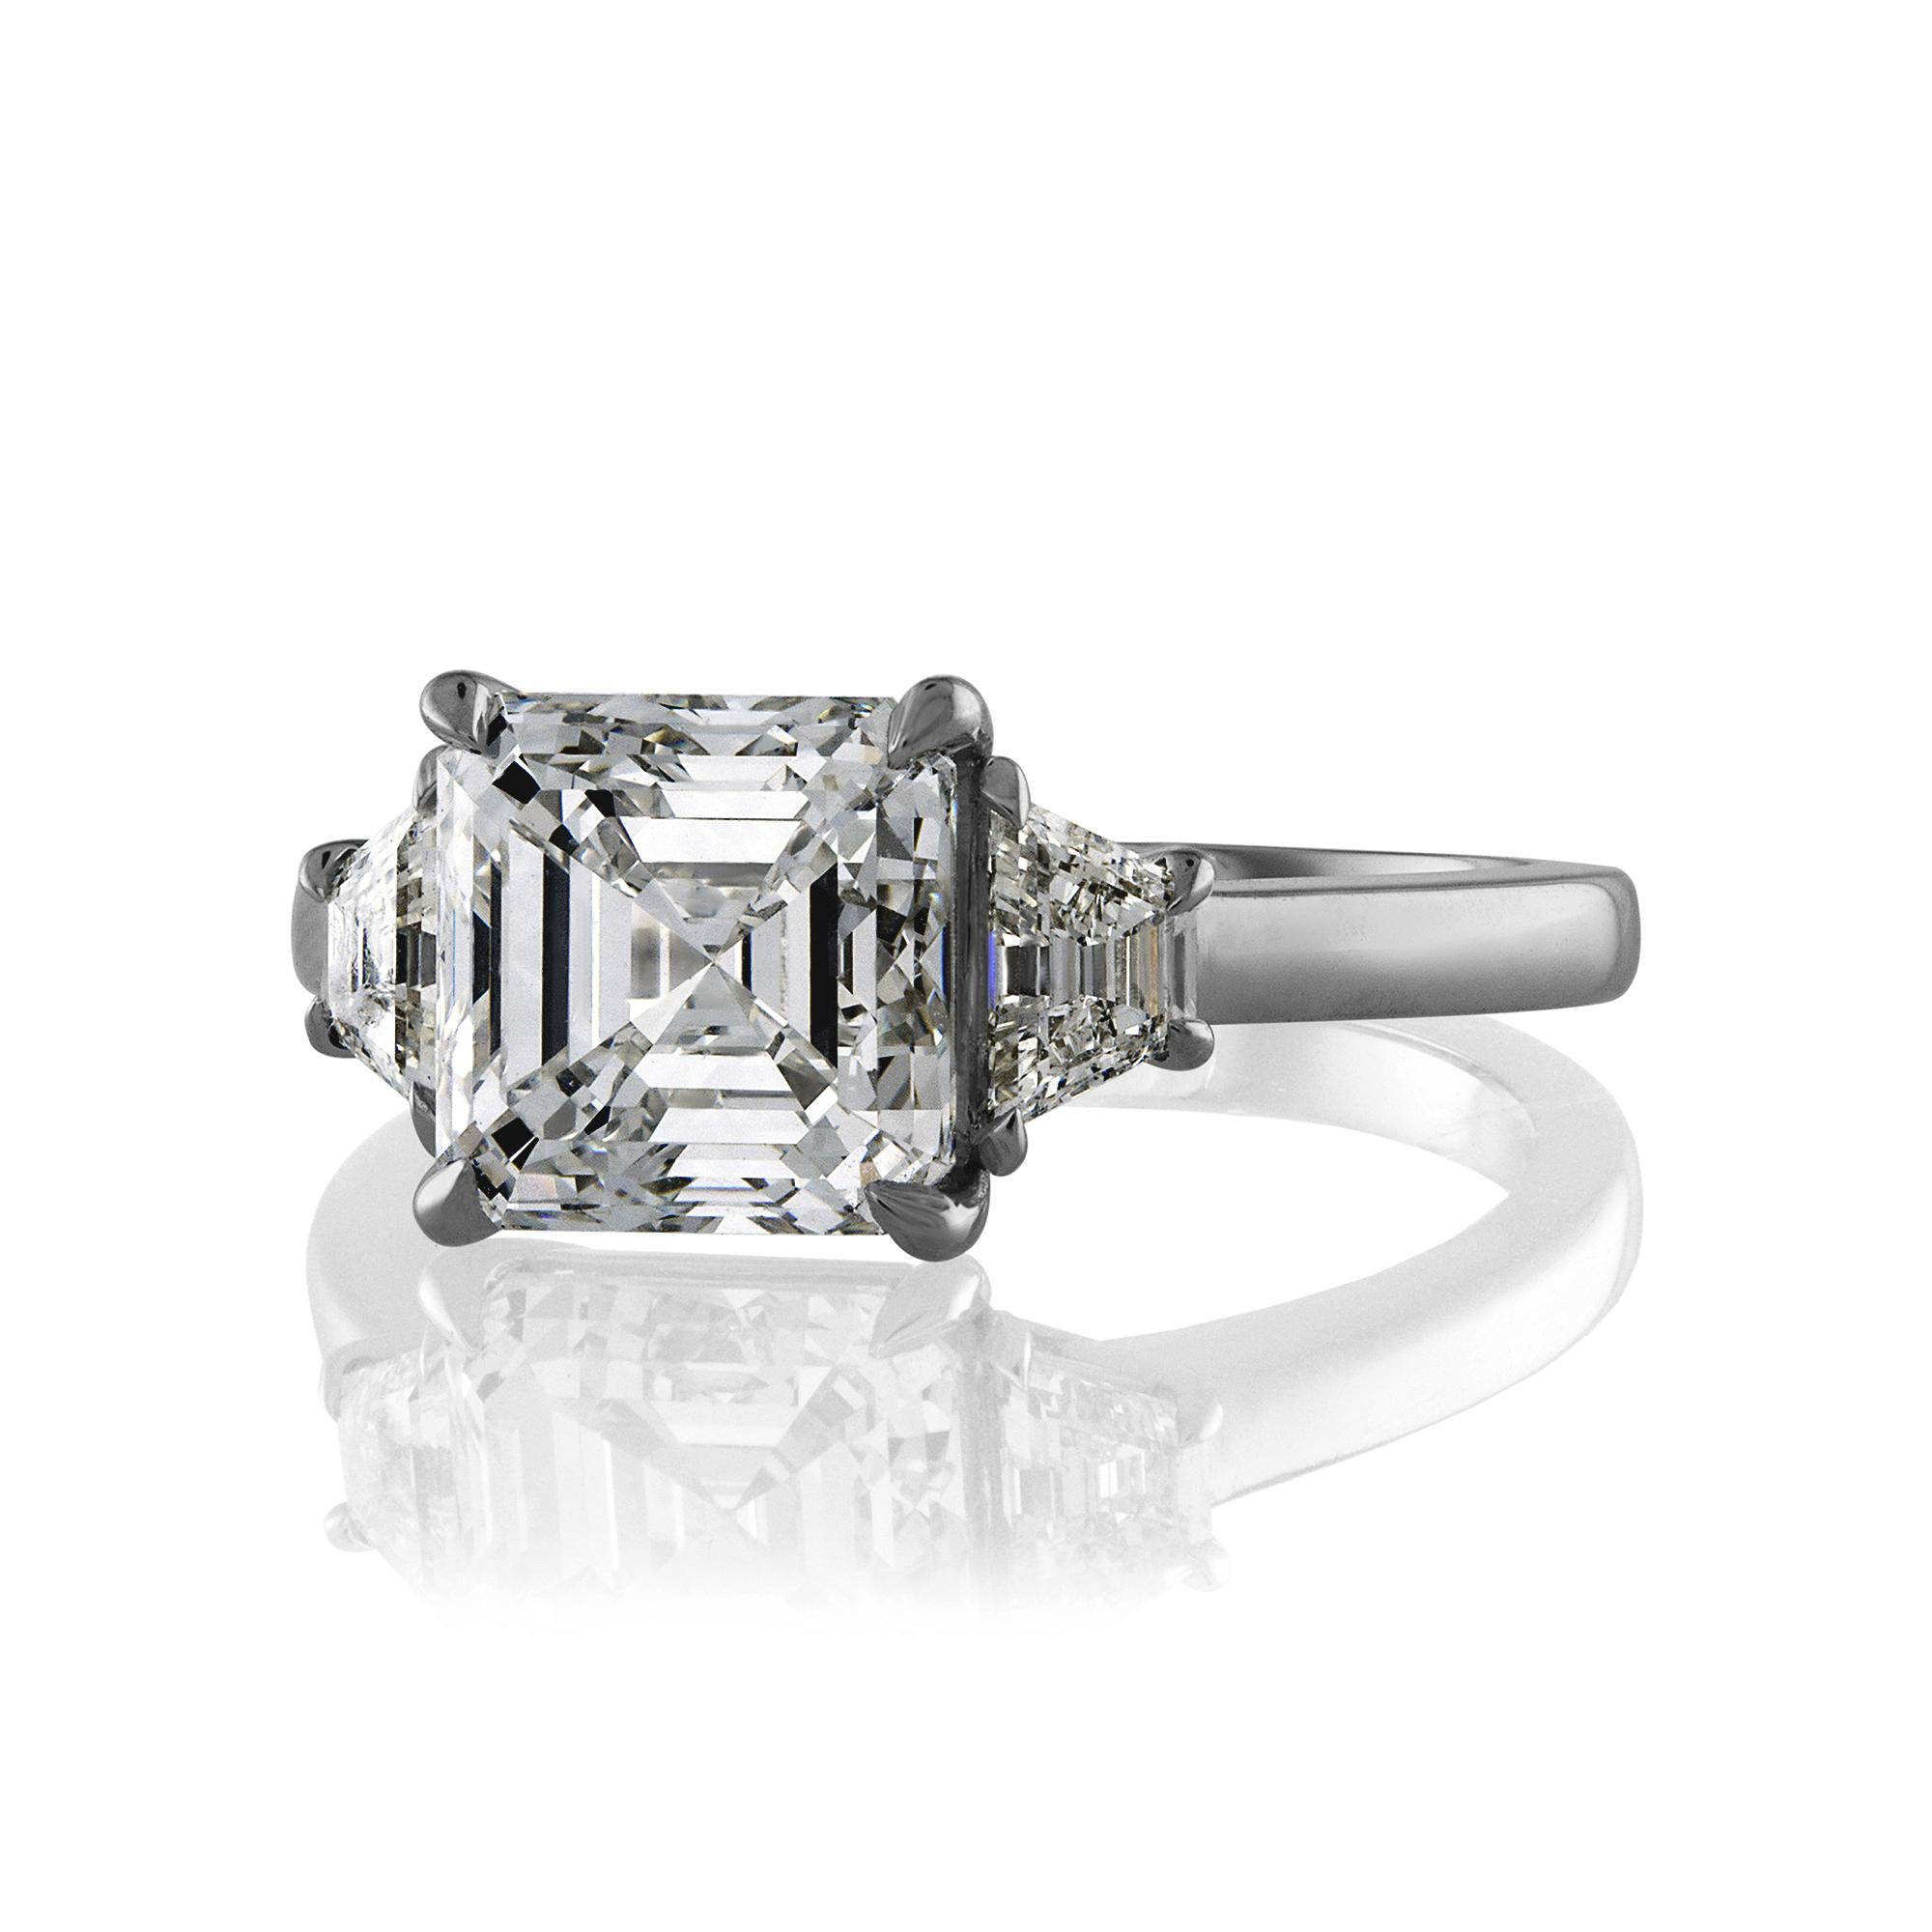 Zeitlose Estate GIA 3,47ct Asscher Cut Diamond Engagement Jahrestag 3 Stein Platin Ring.

Dieser beeindruckende Ring wird Ihnen den Atem rauben! Eine einmalige Gelegenheit, einen GROSSEN, 100% NATÜRLICHEN, NICHT behandelten Diamanten zu einem